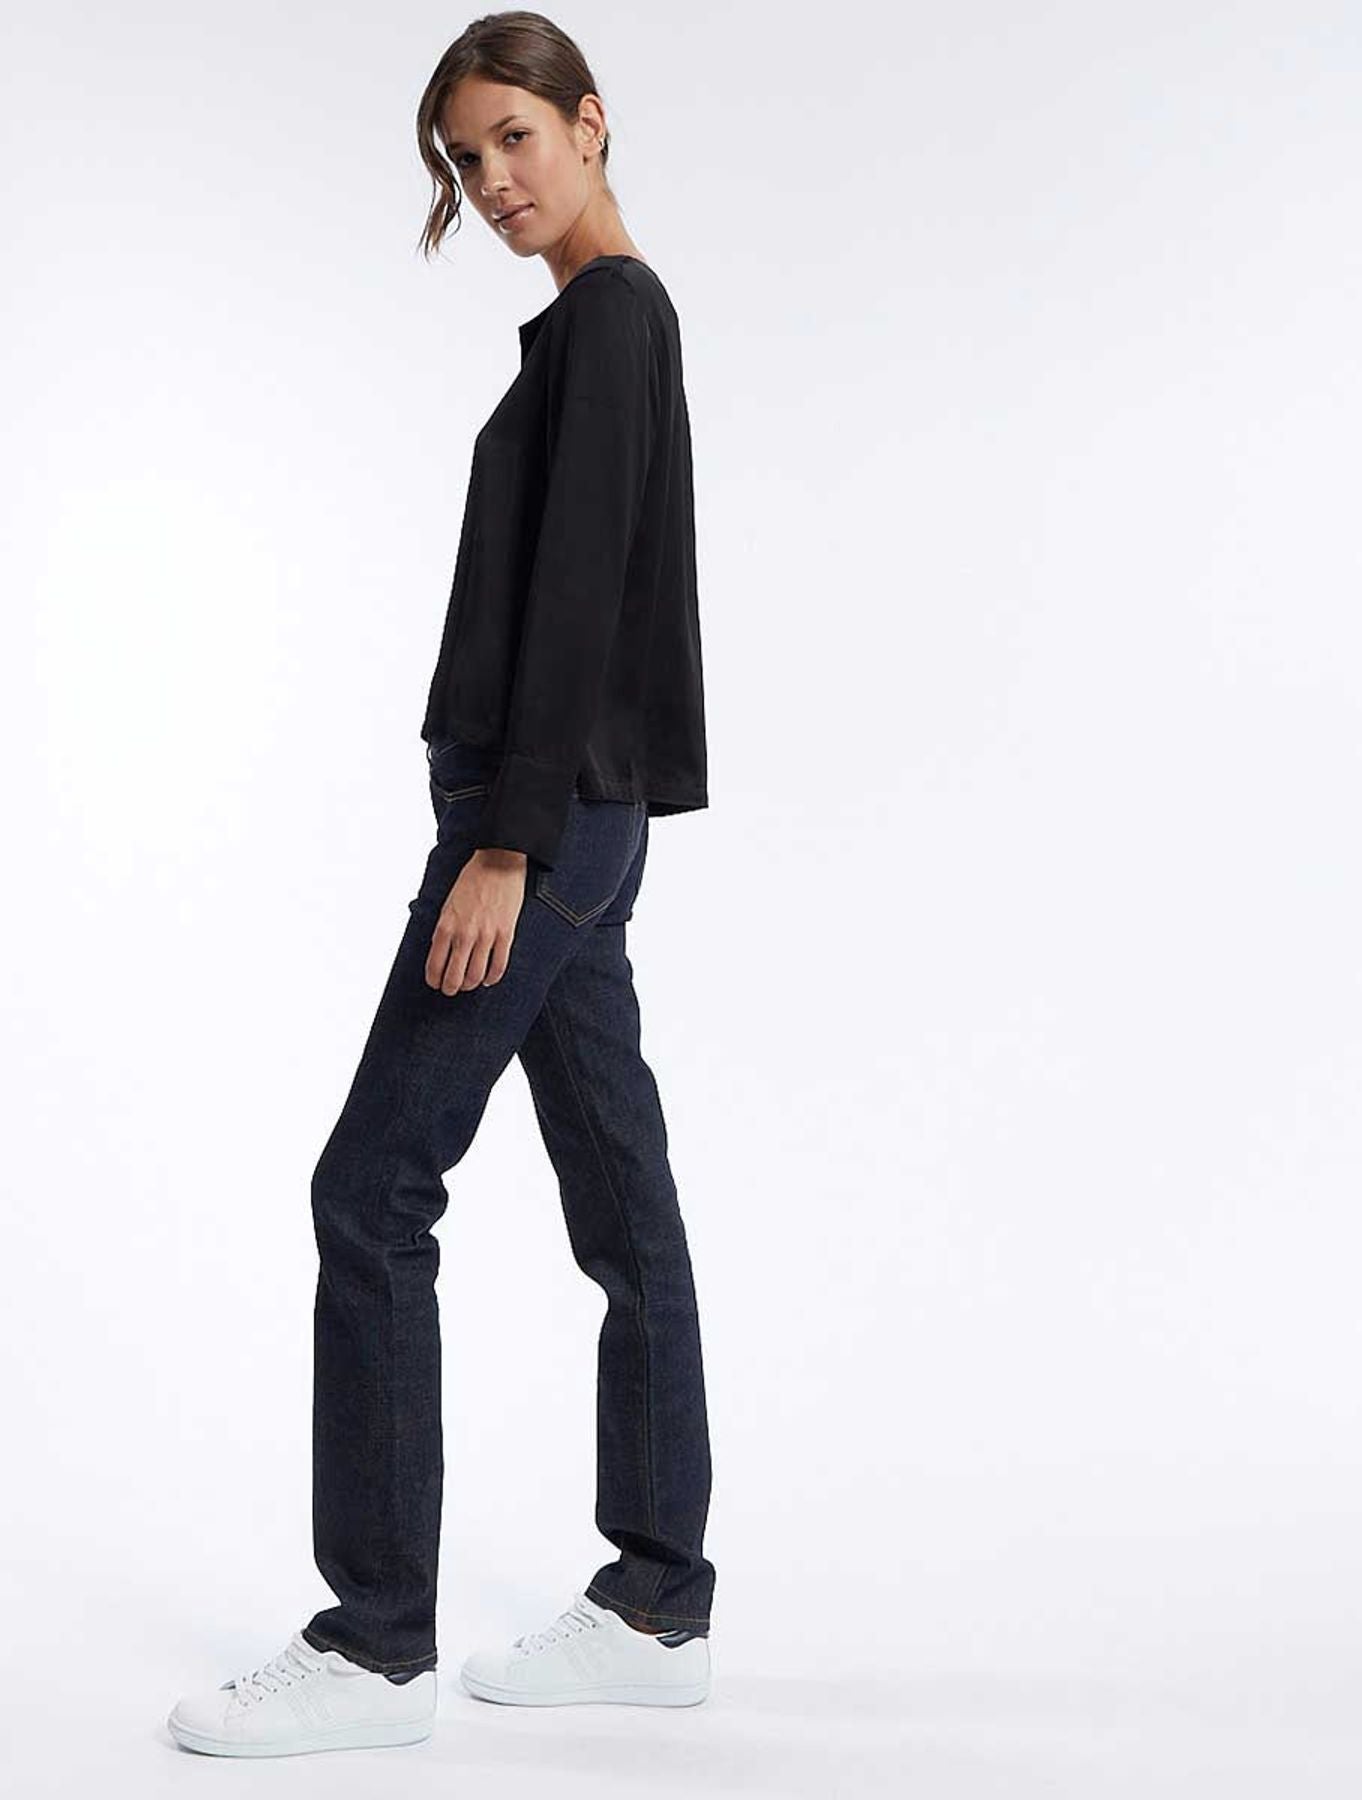 blouse-sixtine-noire